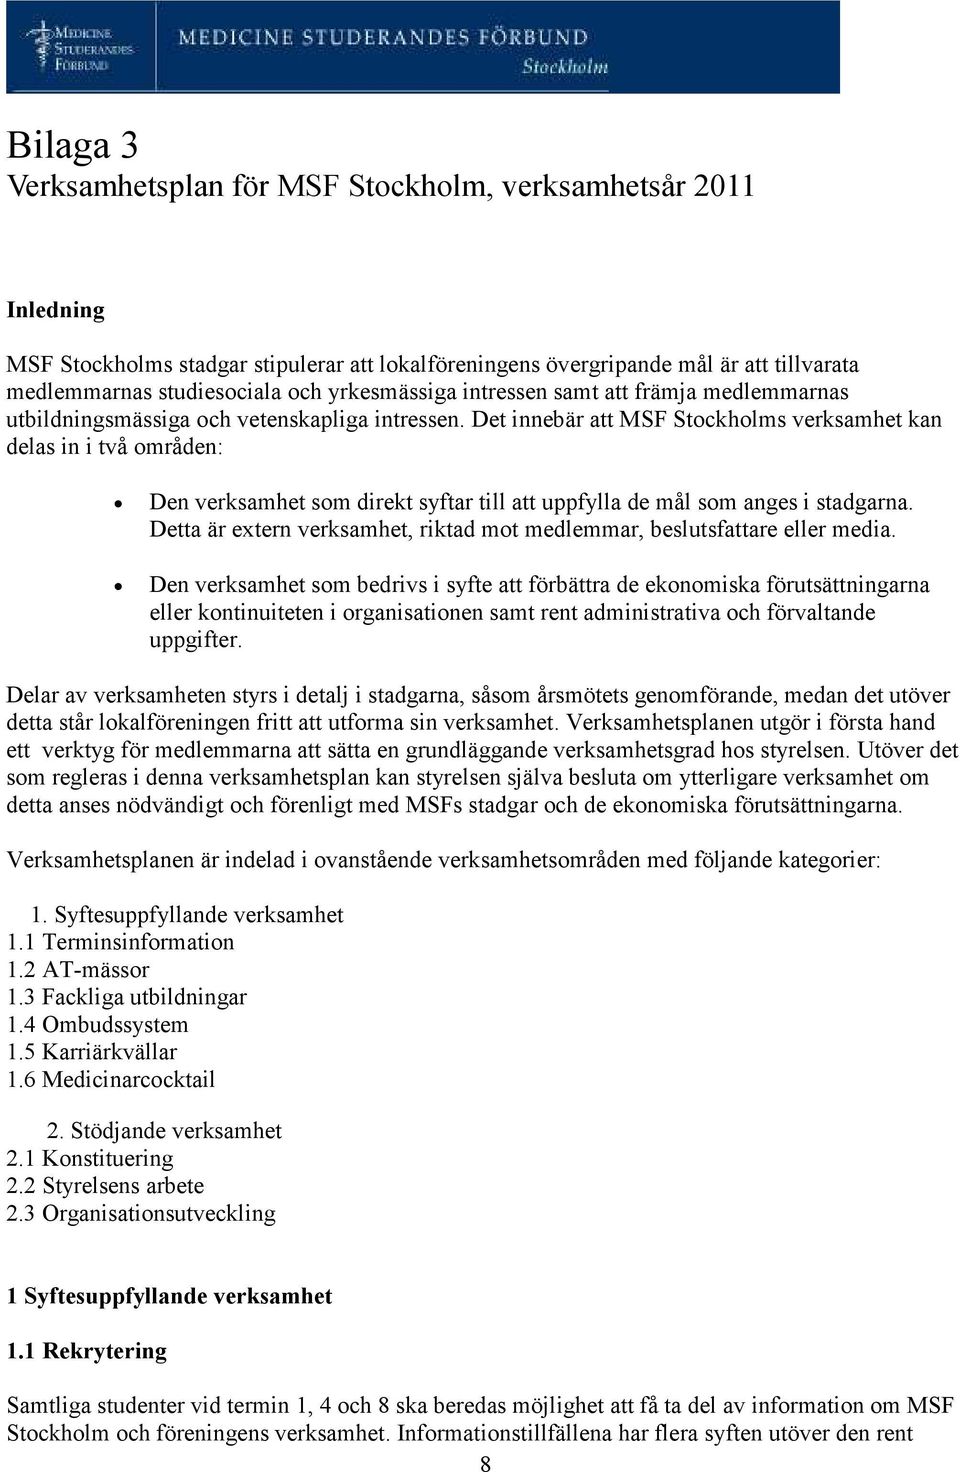 Det innebär att MSF Stockholms verksamhet kan delas in i två områden: Den verksamhet som direkt syftar till att uppfylla de mål som anges i stadgarna.